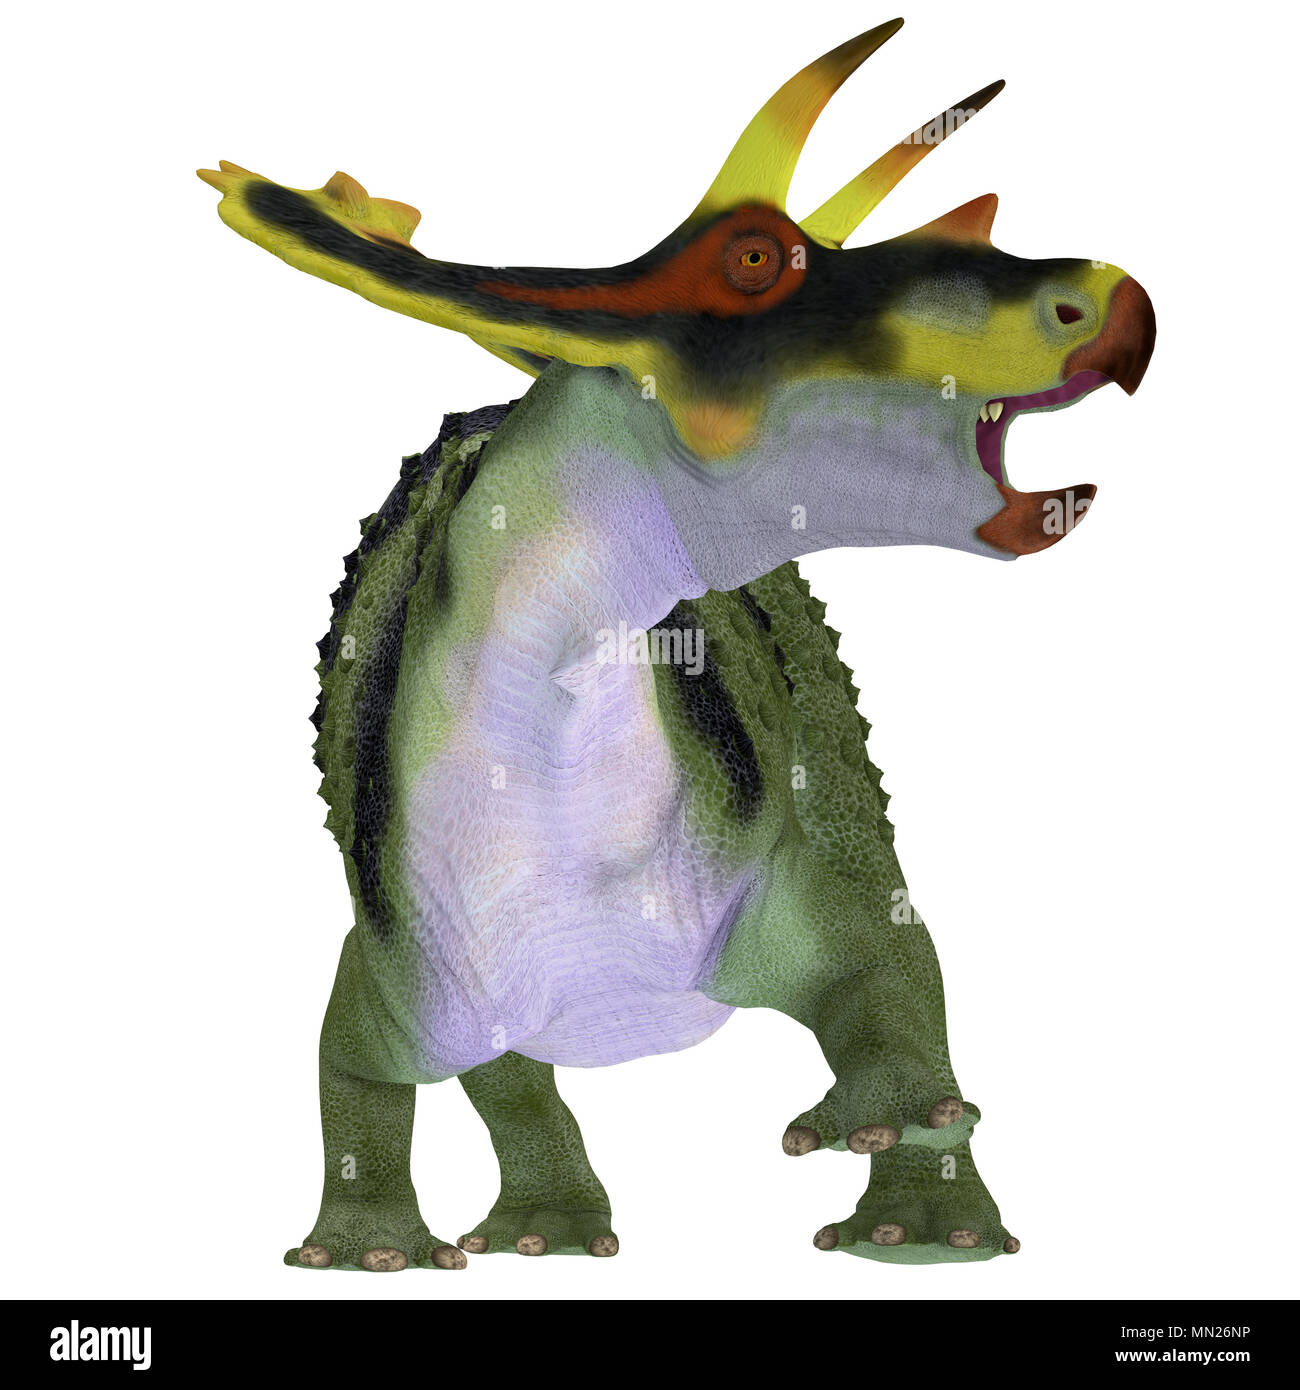 Anchiceratops Dinosaurier auf Weiß - Anchiceratops ornatus war ein Pflanzenfresser Ceratopsian Dinosaurier, die in Alberta, Kanada in der Kreidezeit lebten. Stockfoto